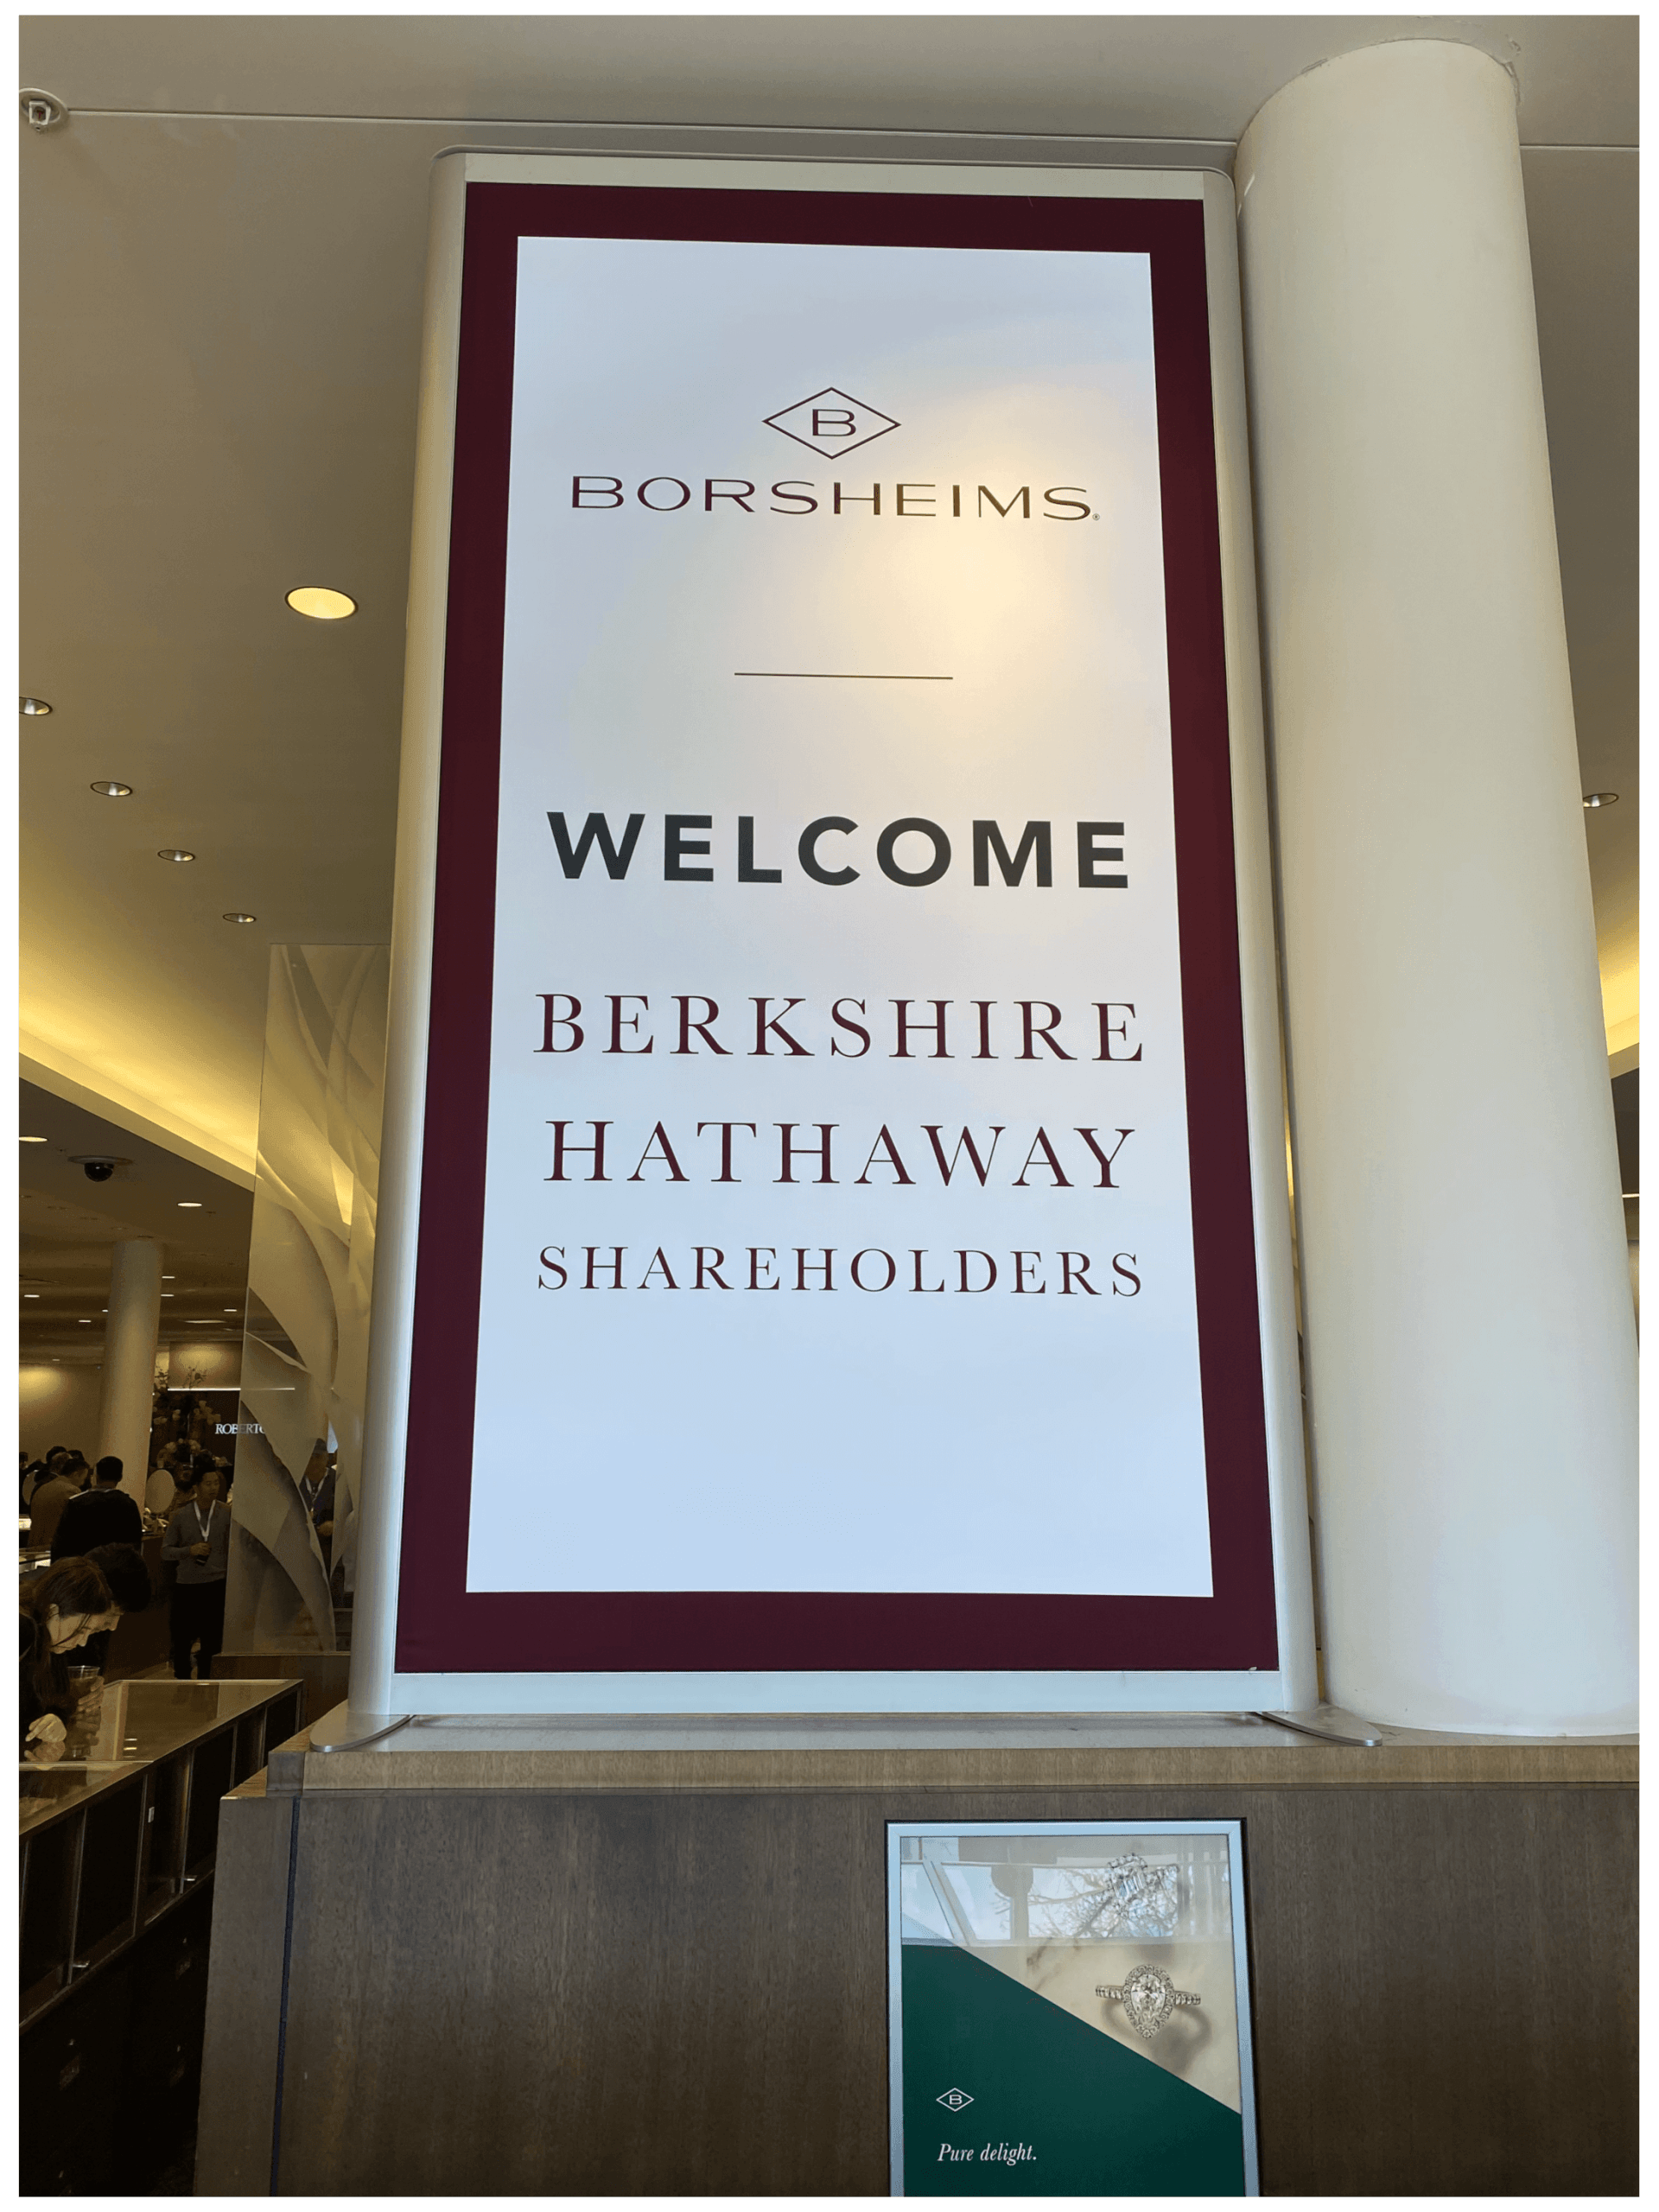 Willkommensschild von Borsheims für Berkshire Hathaway Shareholders